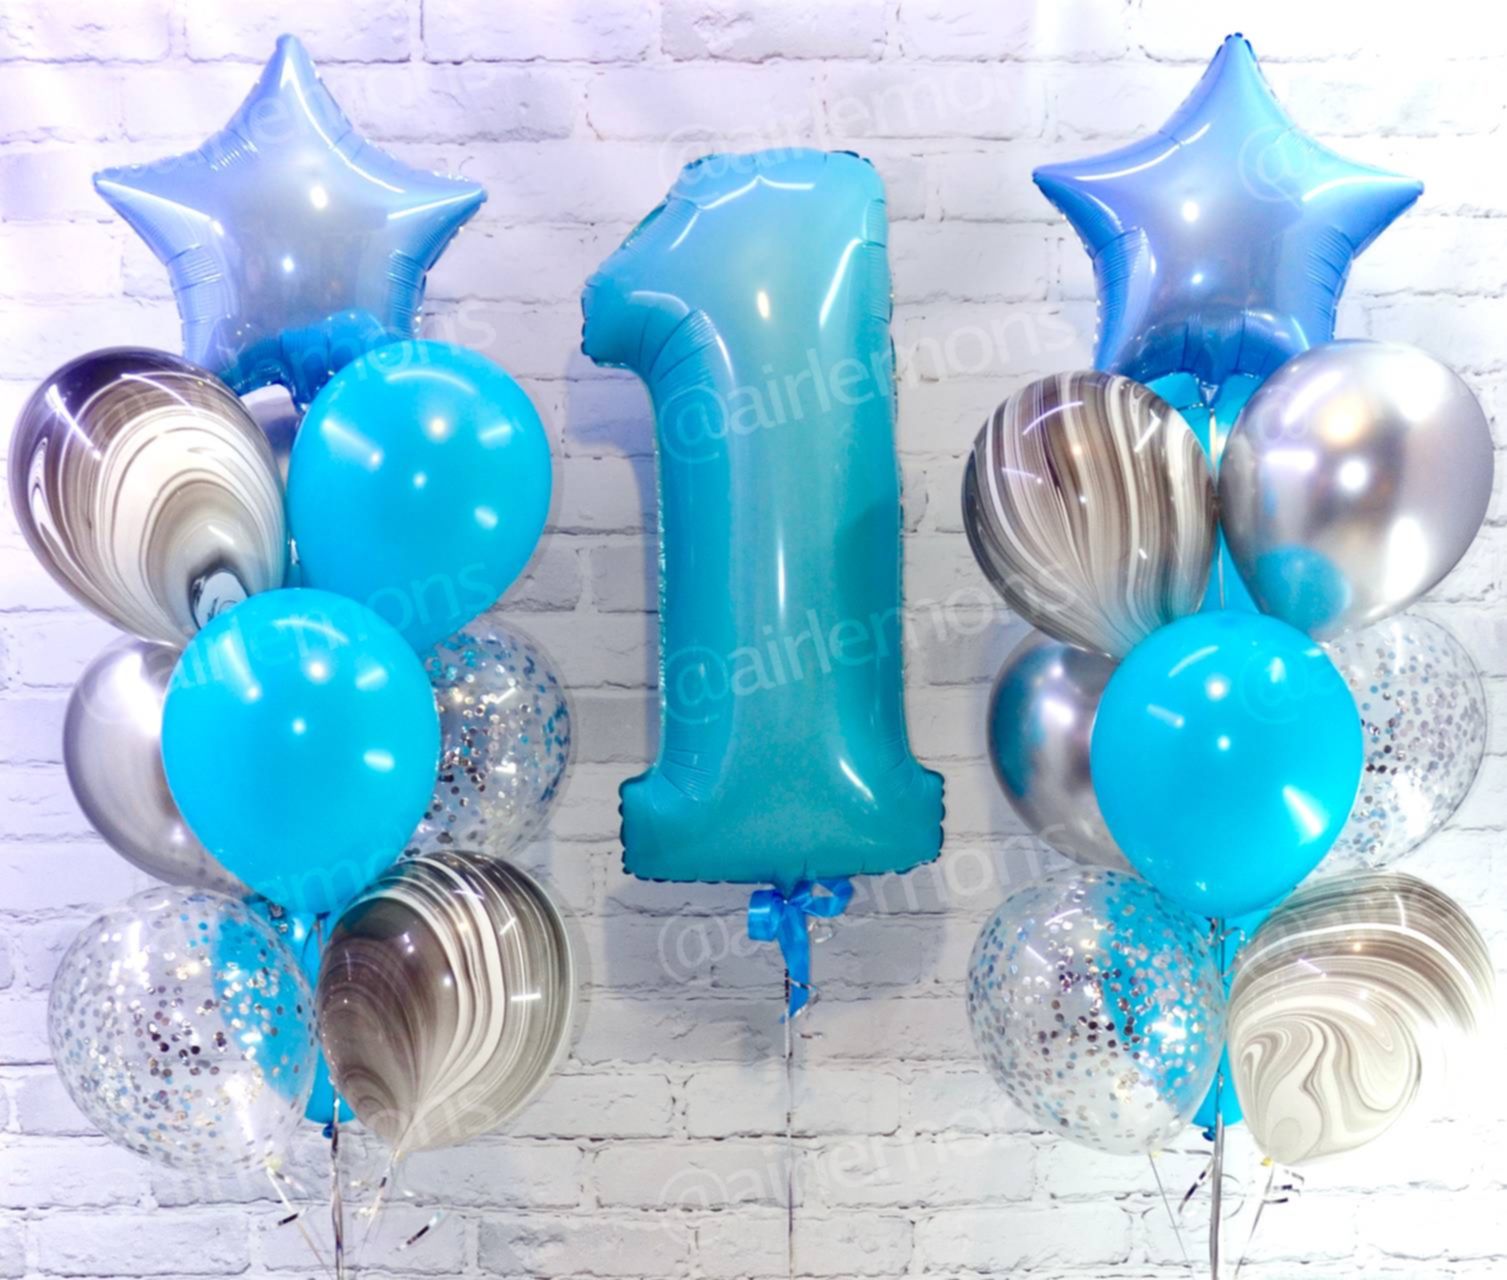 оформление шарами на день рождения мальчика 1 год